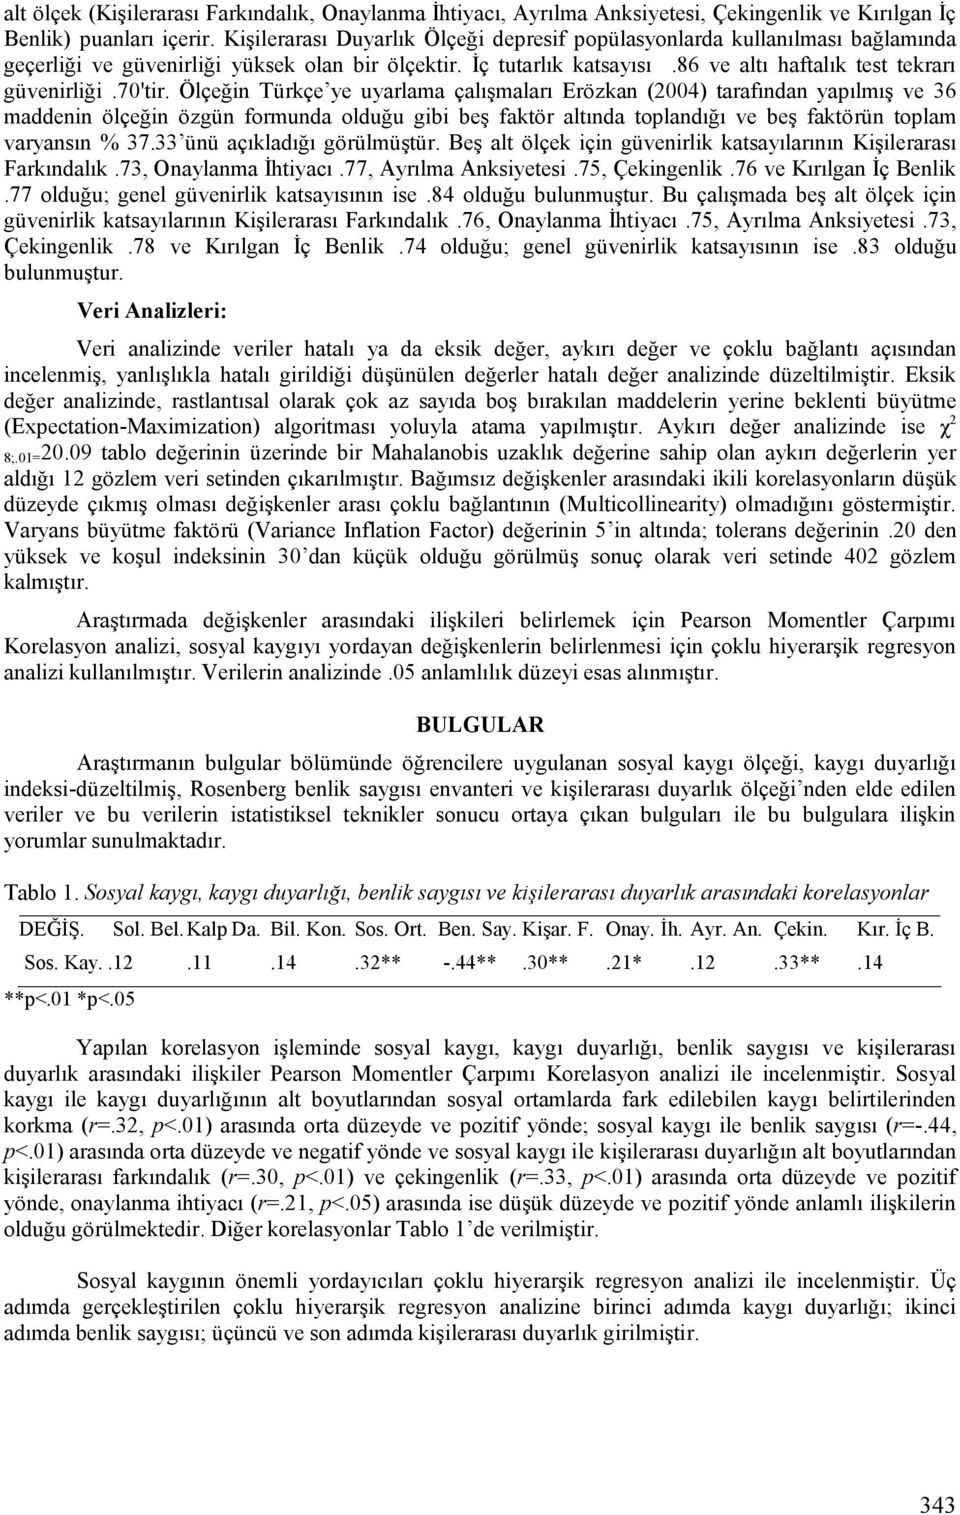 70'tir. Ölçeğin Türkçe ye uyarlama çalışmaları Erözkan (2004) tarafından yapılmış ve 36 maddenin ölçeğin özgün formunda olduğu gibi beş faktör altında toplandığı ve beş faktörün toplam varyansın % 37.